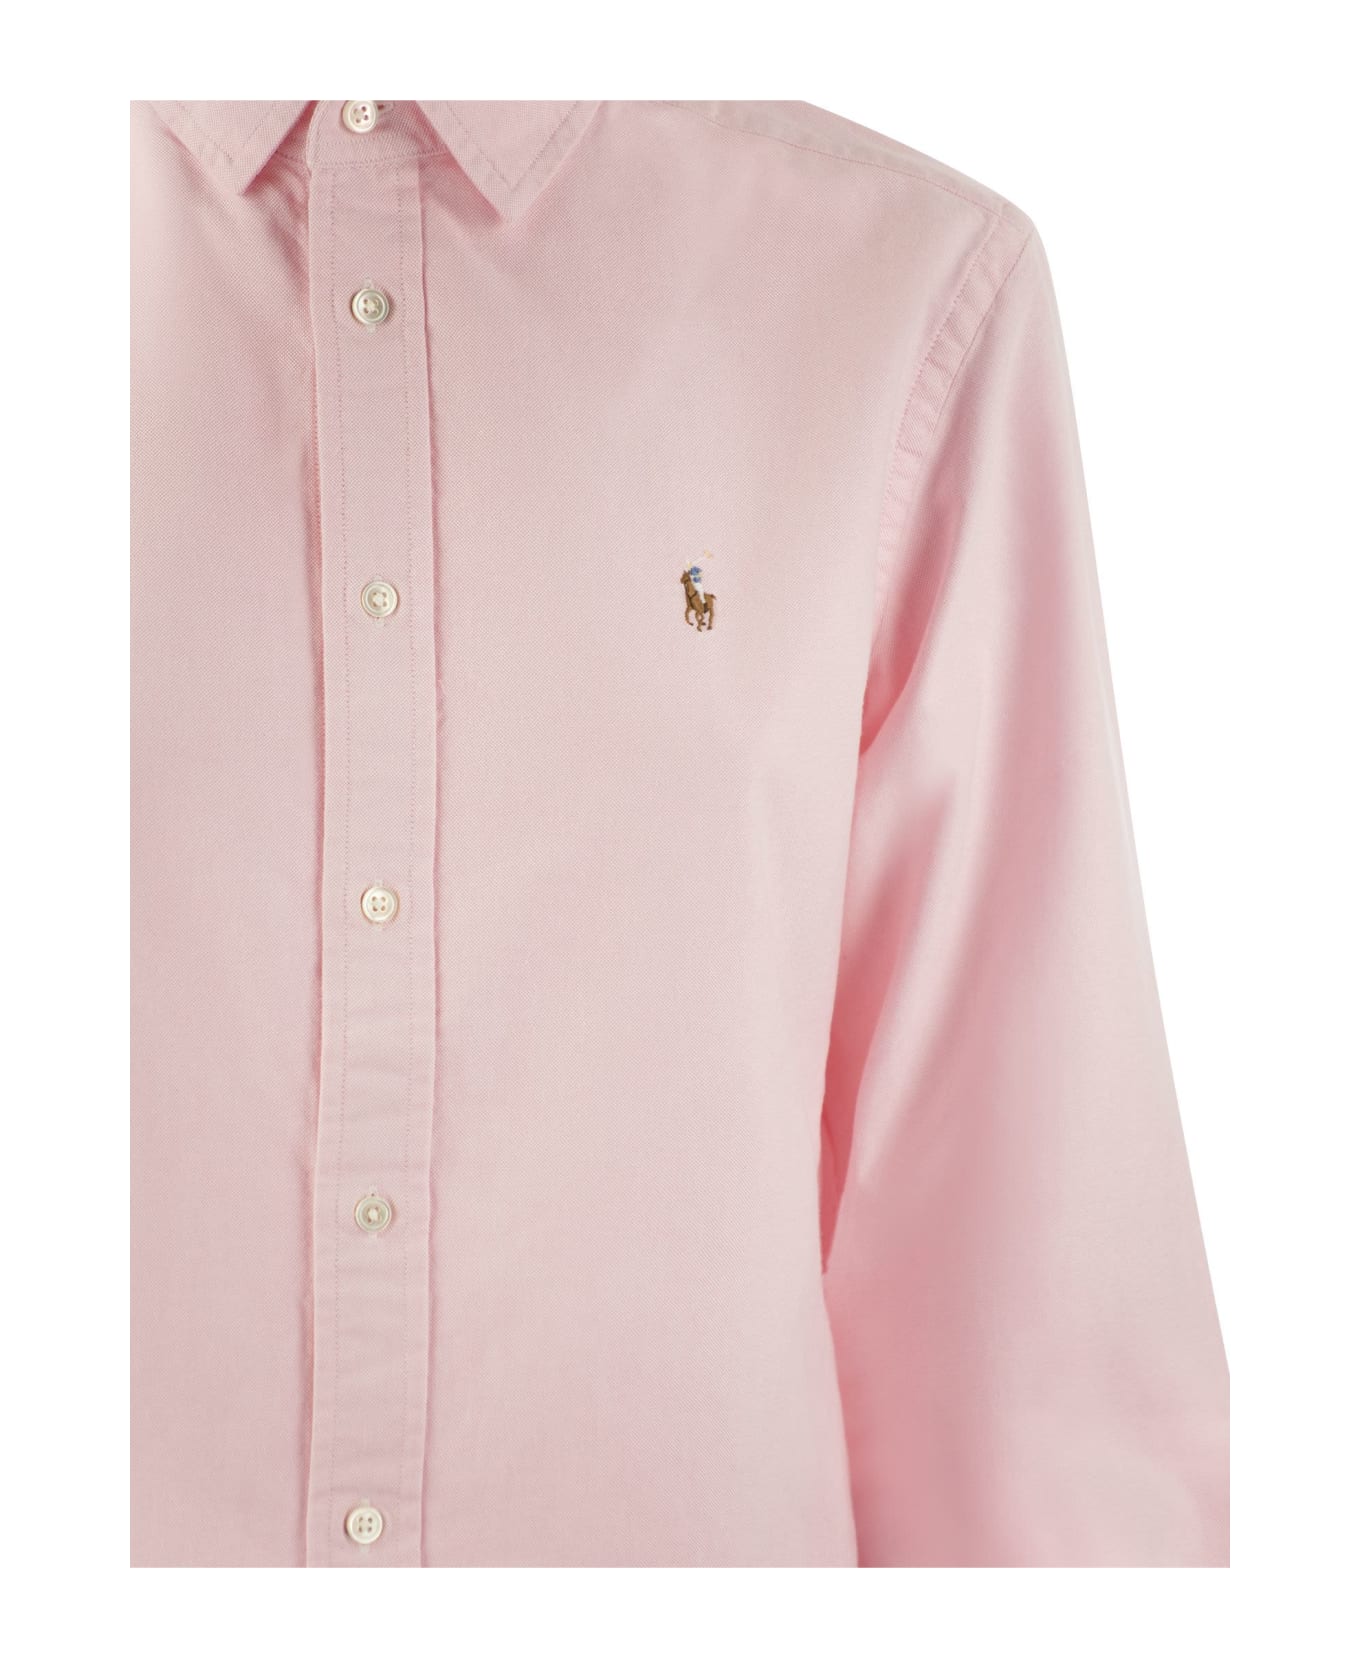 Polo Ralph Lauren Shirt - Pink シャツ